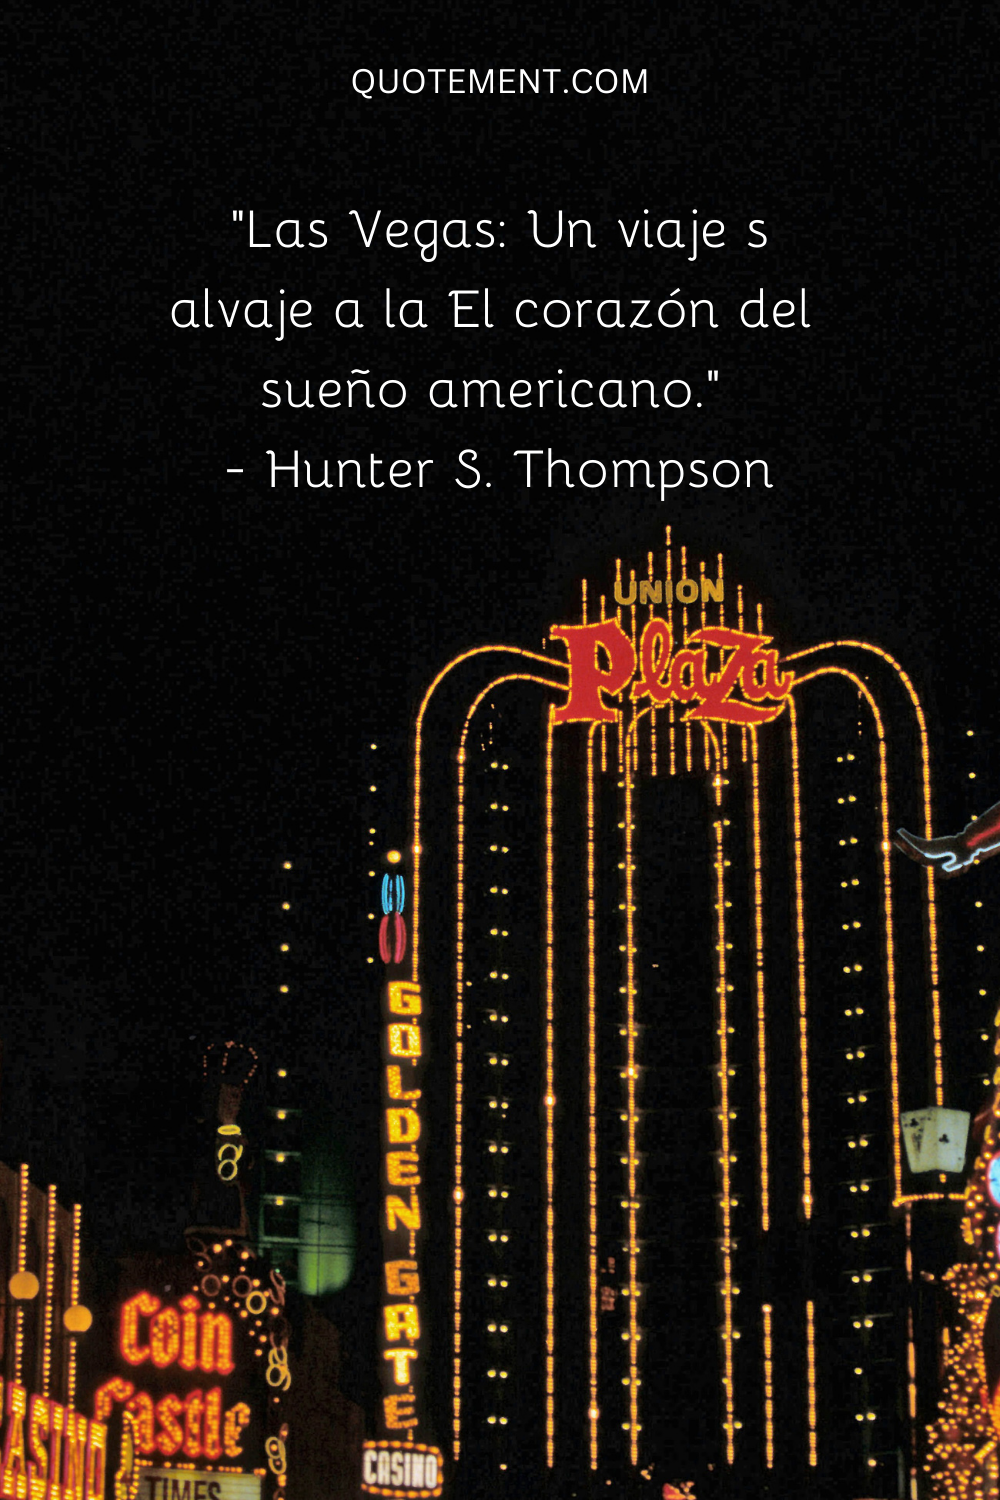 "Las Vegas Un Viaje Salvaje al Corazón del Sueño Americano". - Hunter S. Thompson